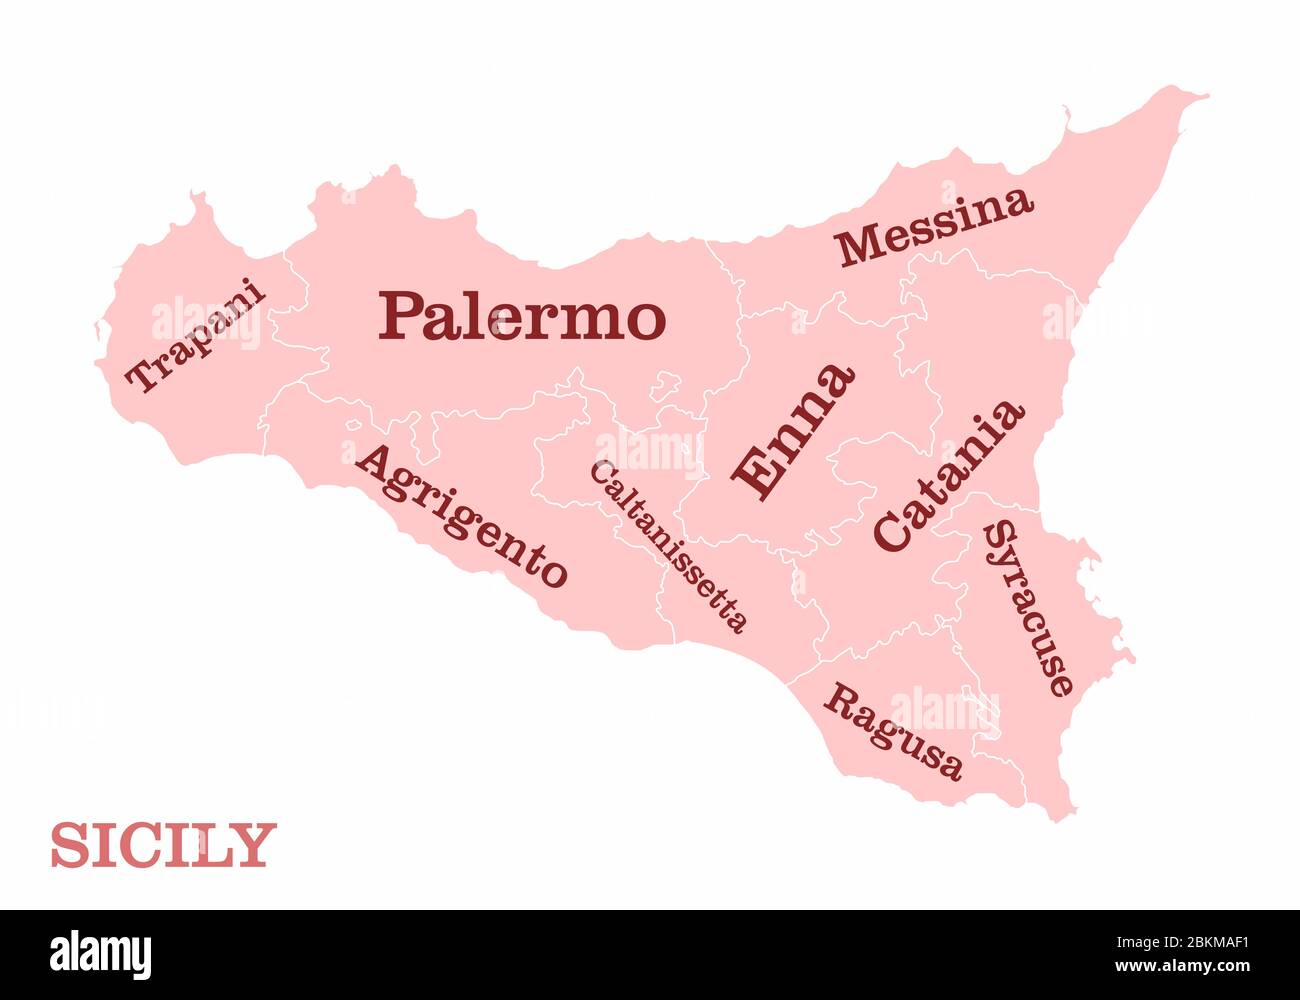 SIZILIEN Sicilia Palermo Messina Catania LANDKARTE  1907 Ätna Liparische Inseln 